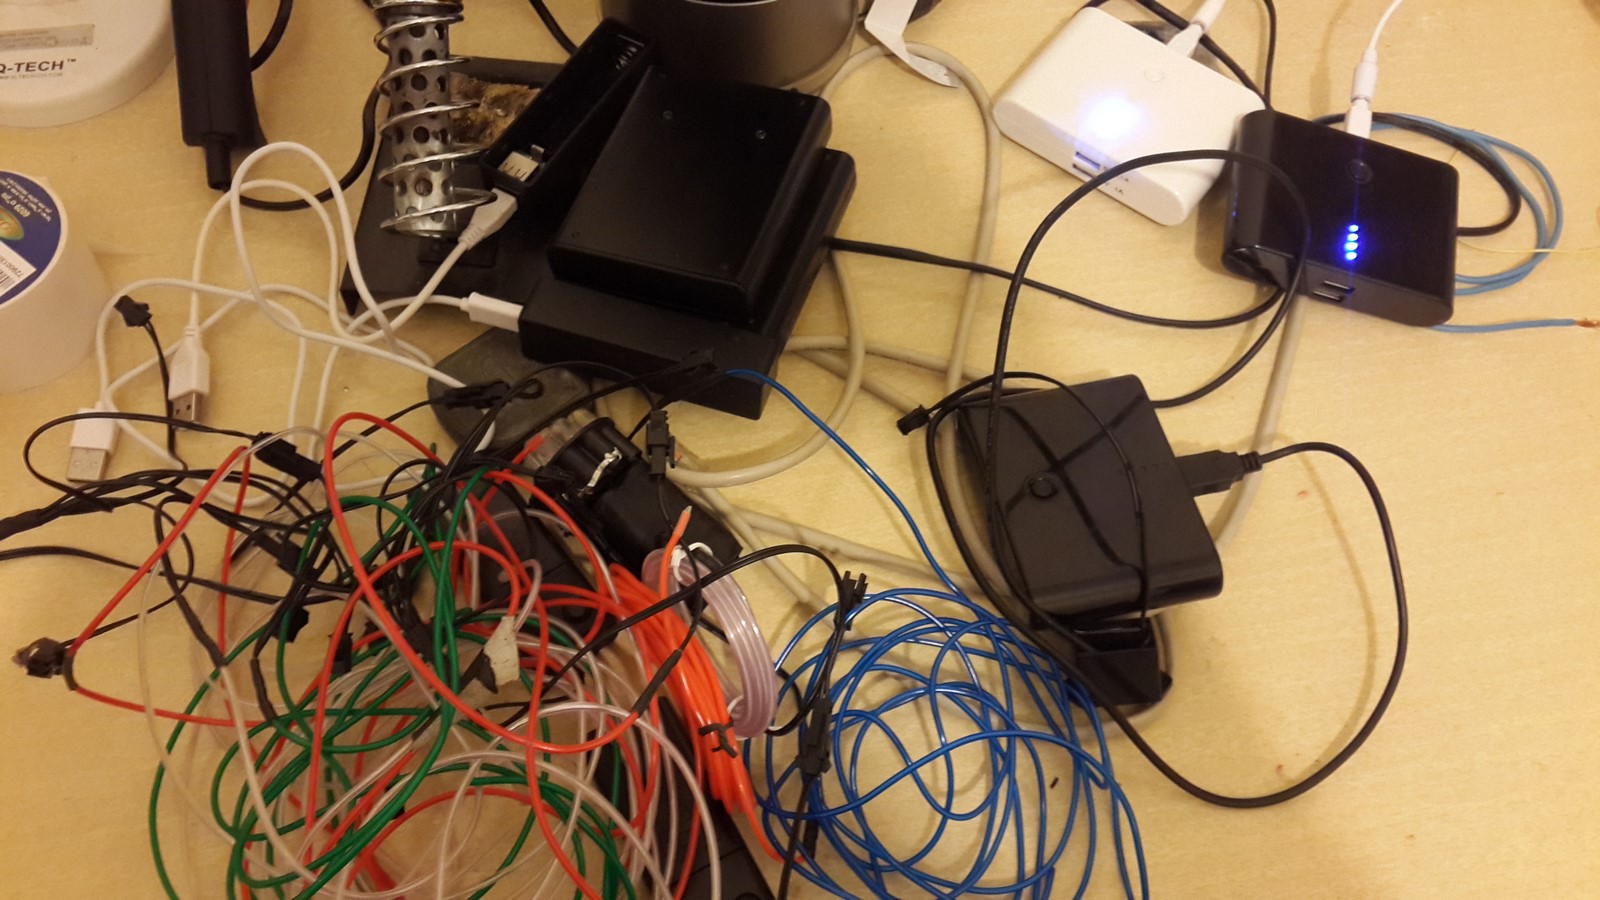 lots of el-wires